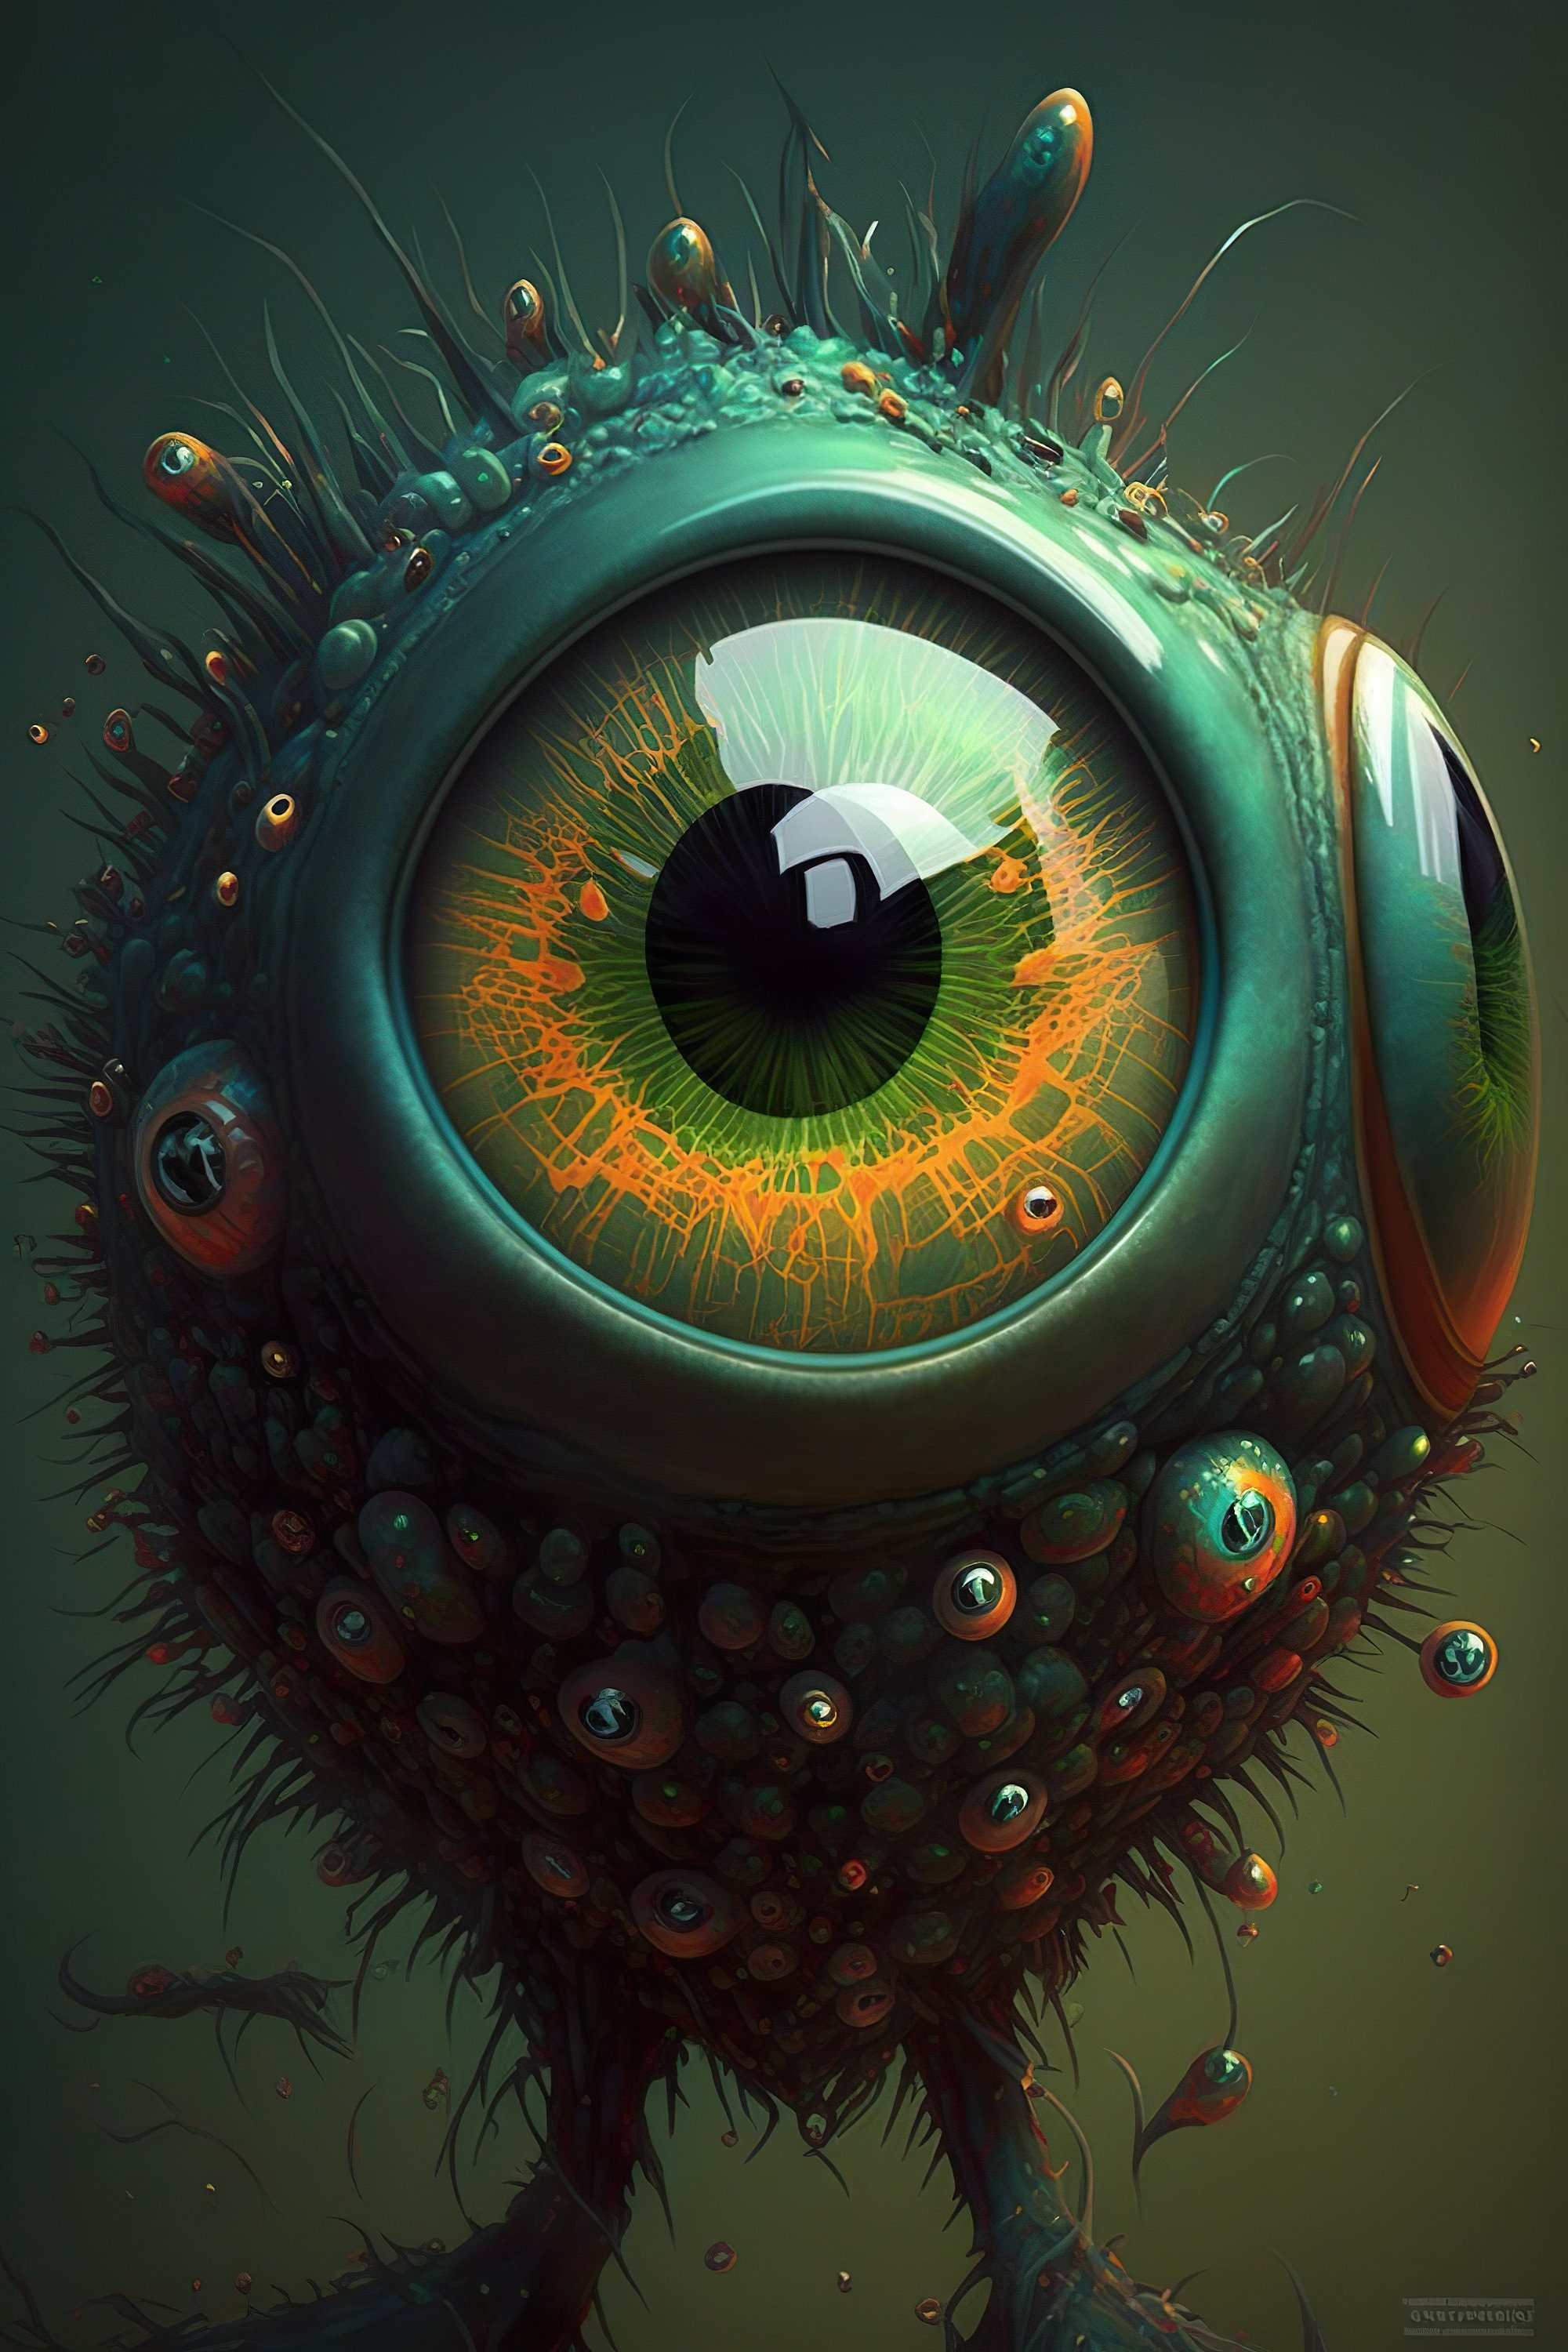 Pixilart - Weirdcore eyes by Vortexis